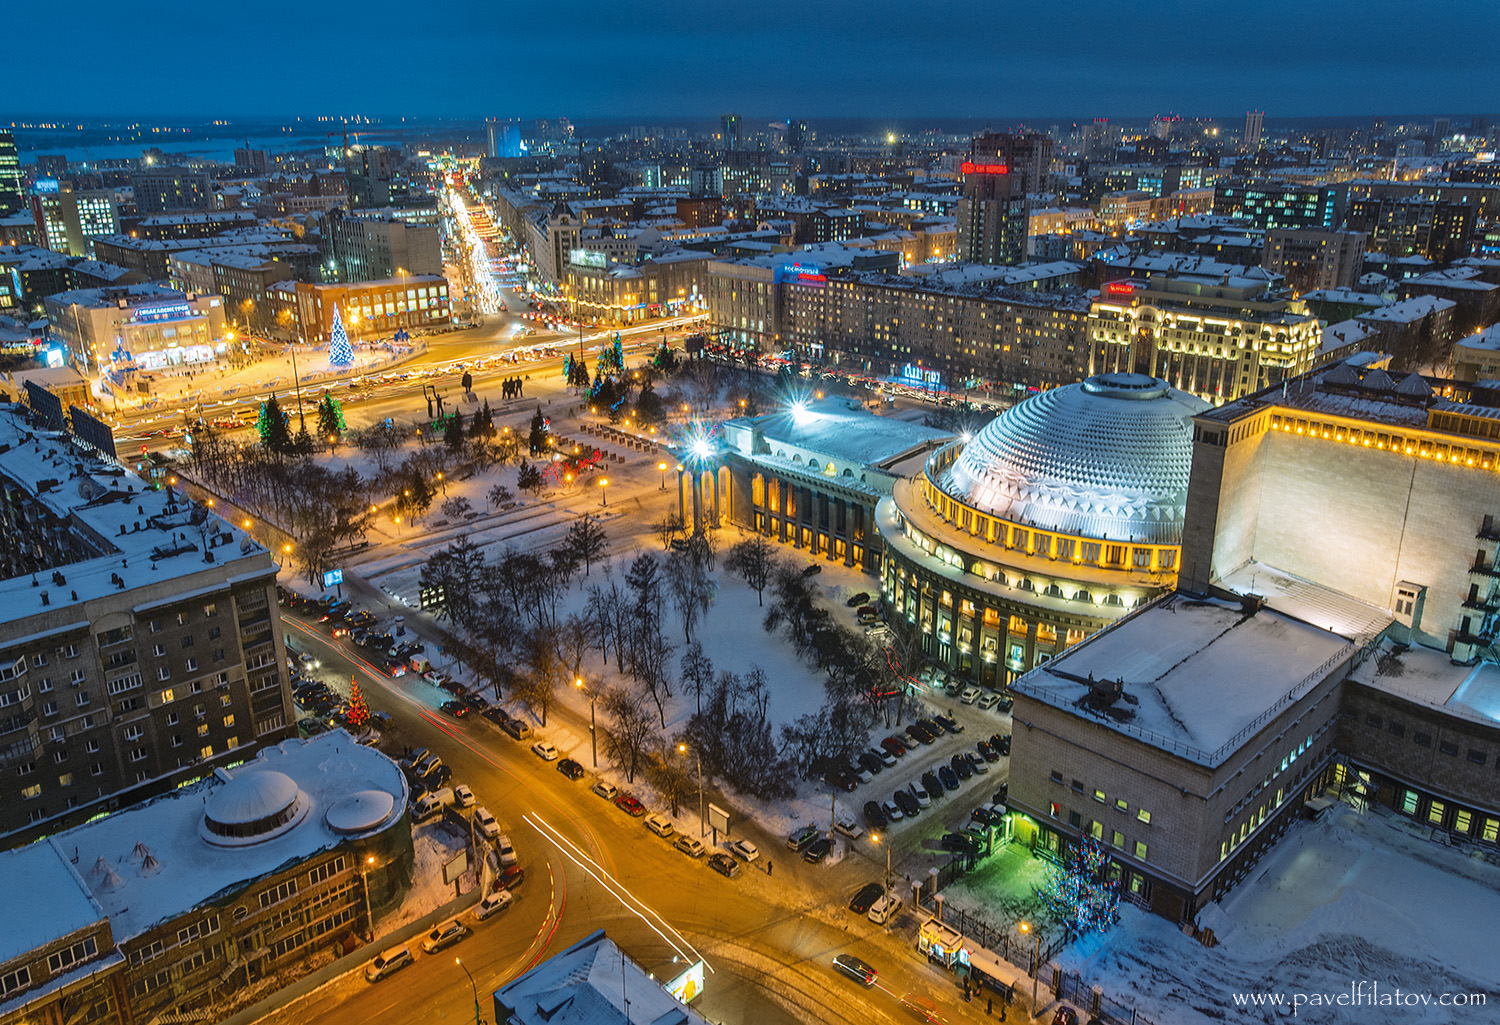 Название столицы сибири. Новосибирск. Новосибирск столица Сибири. Новосибирск фото города. Новосибирск достопримечательности города.